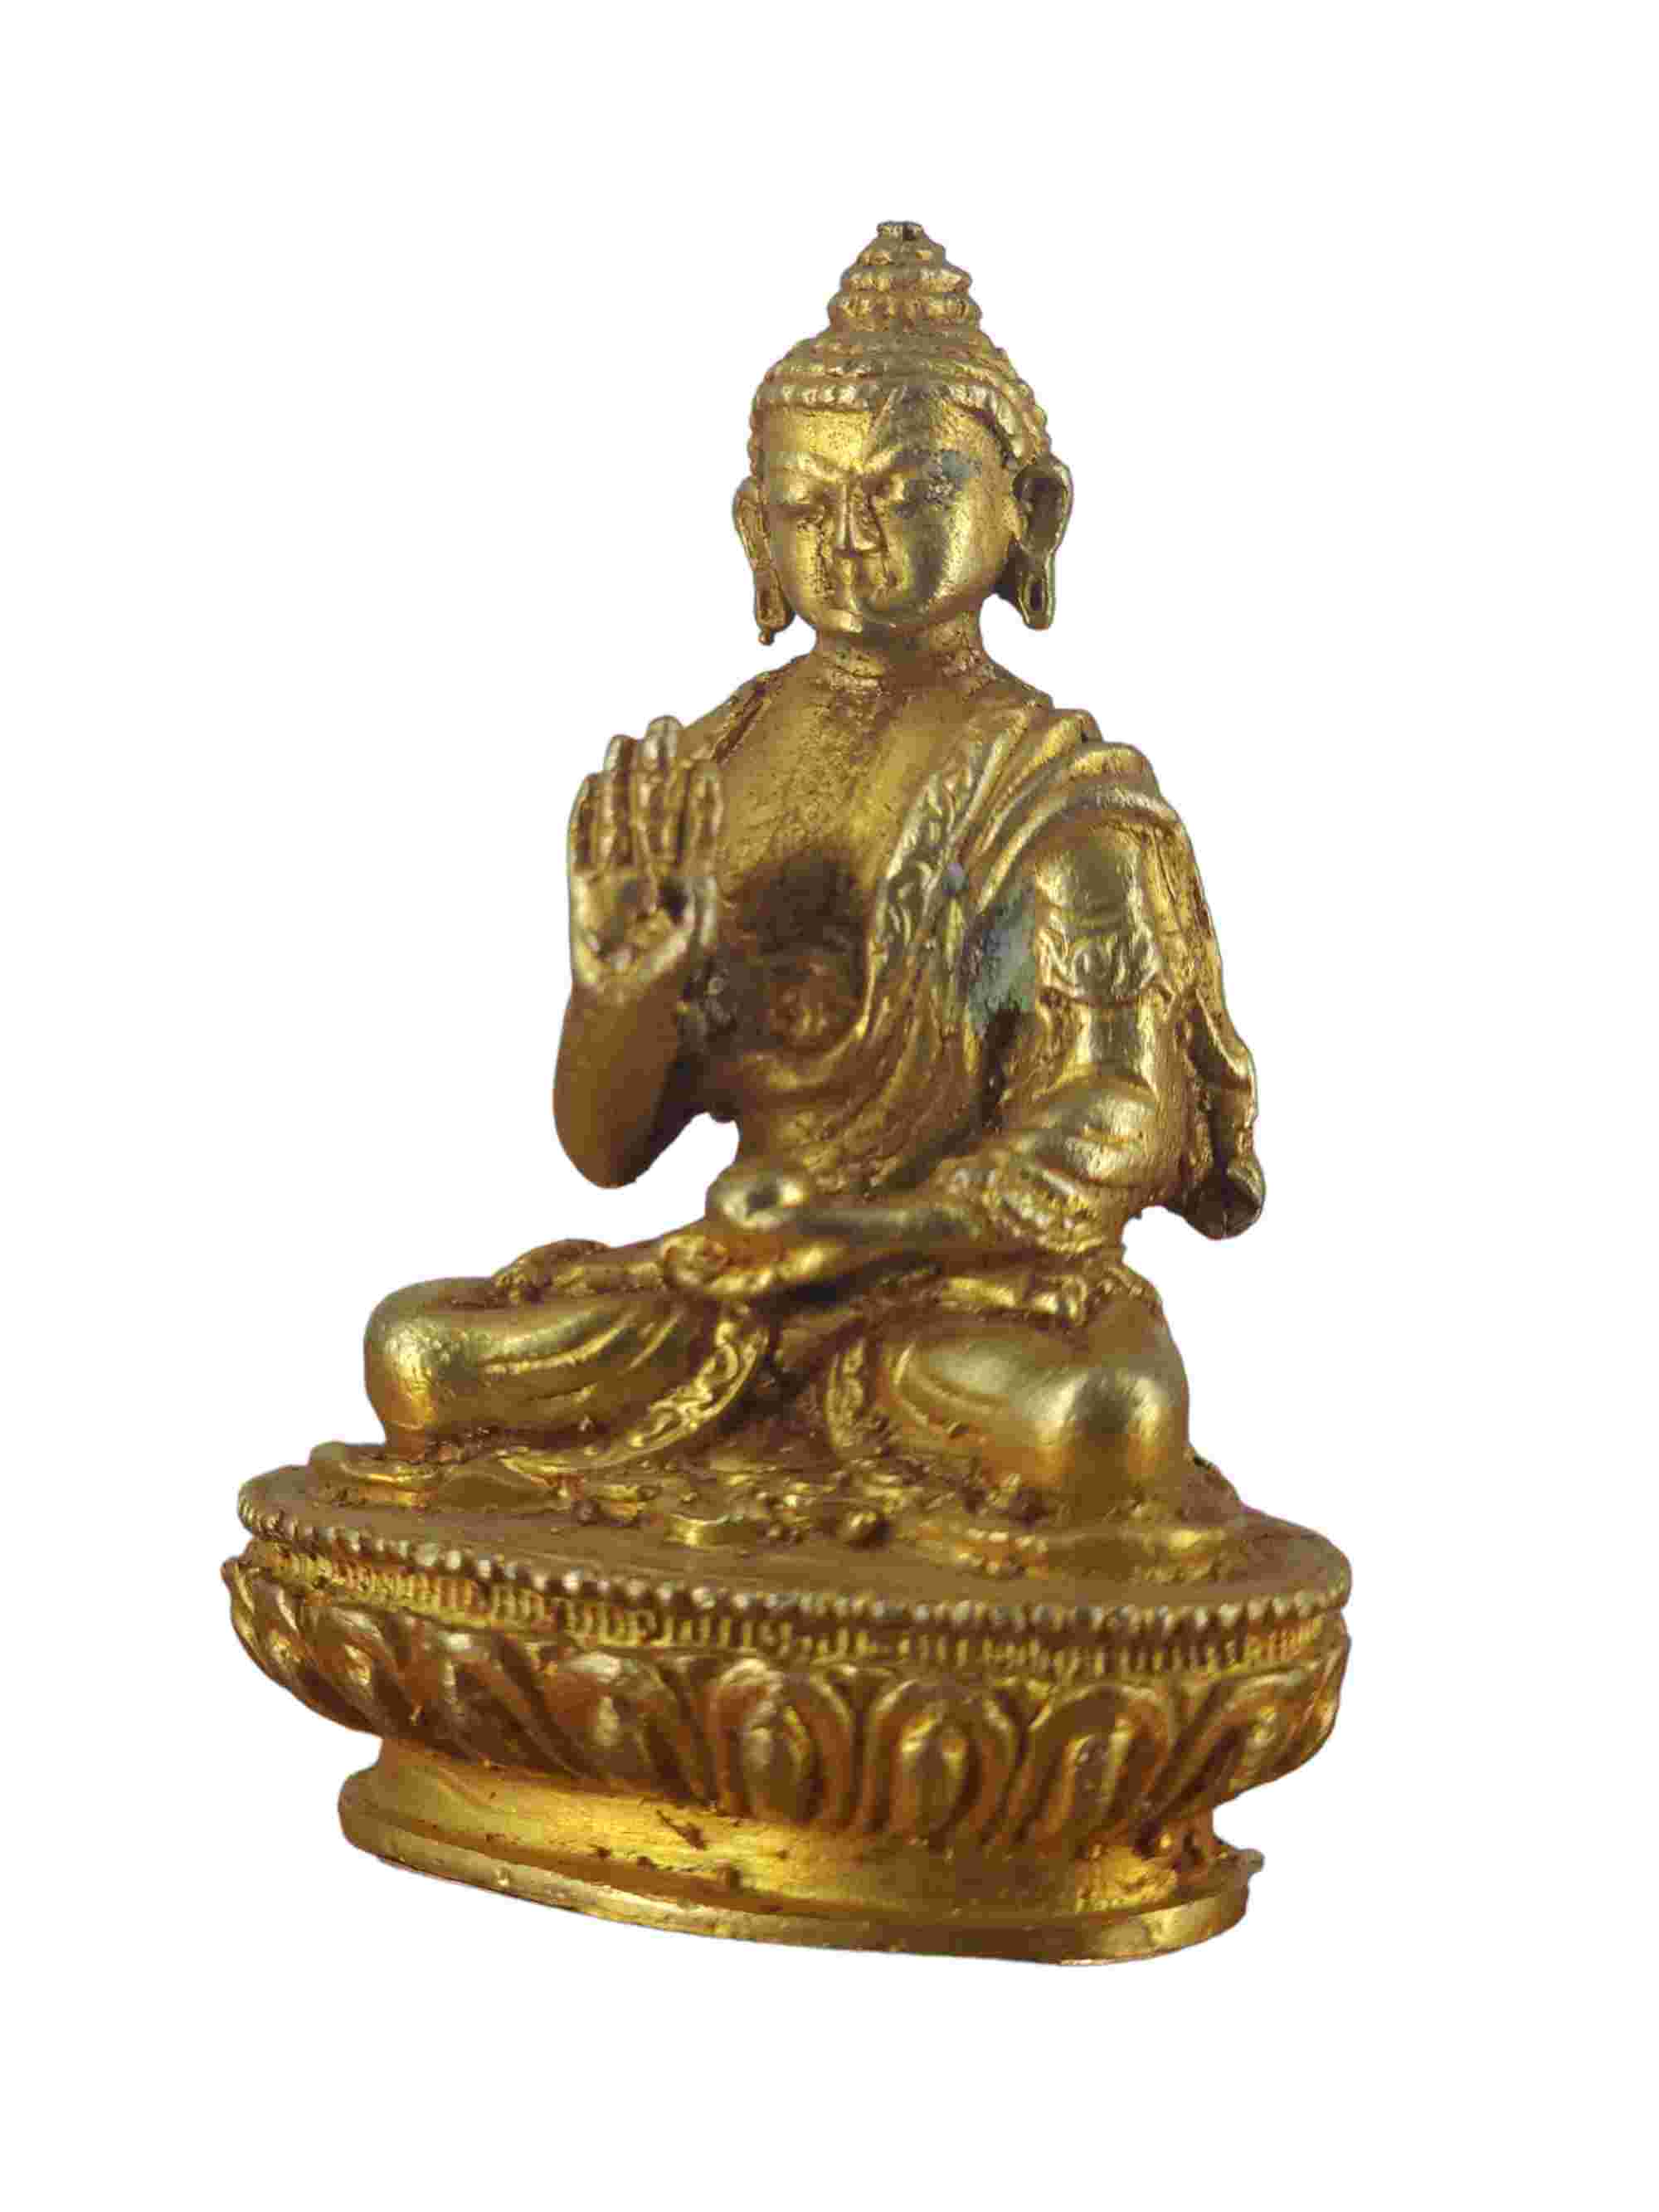 Buddhist Miniature Statue Of Amoghasiddhi Buddha, gold Plated